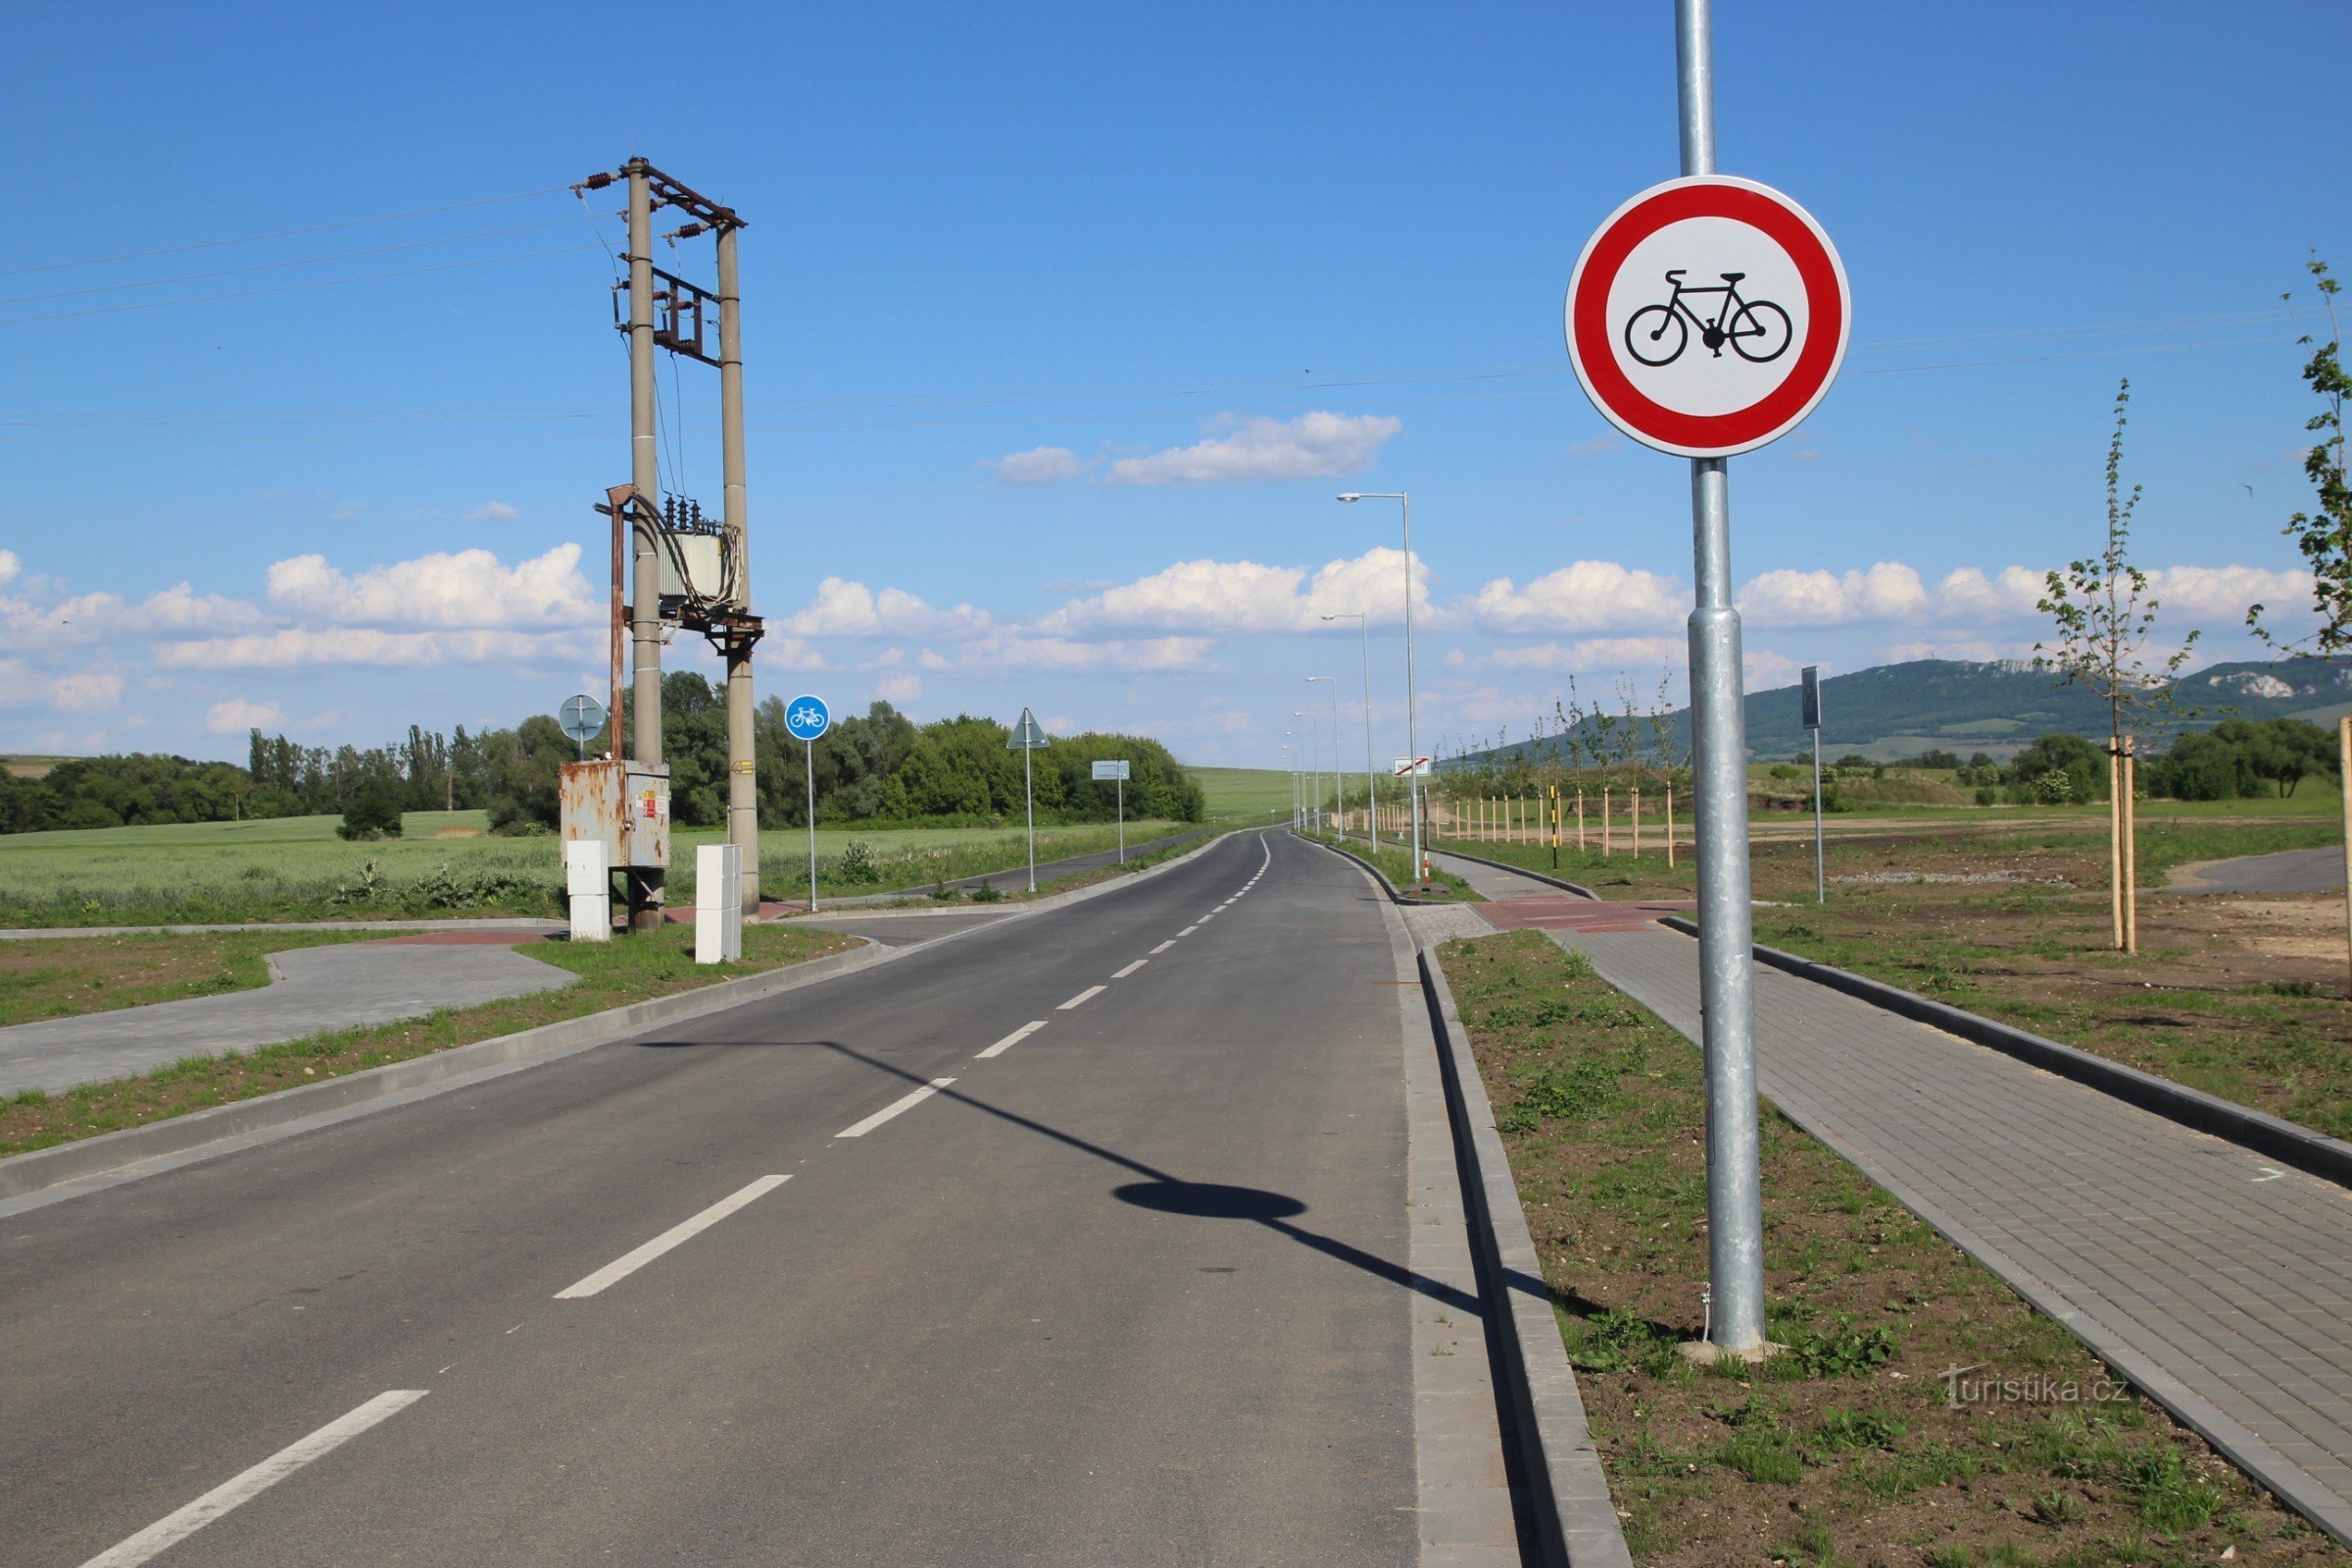 Велосипедная дорожка начинается в конце деревни